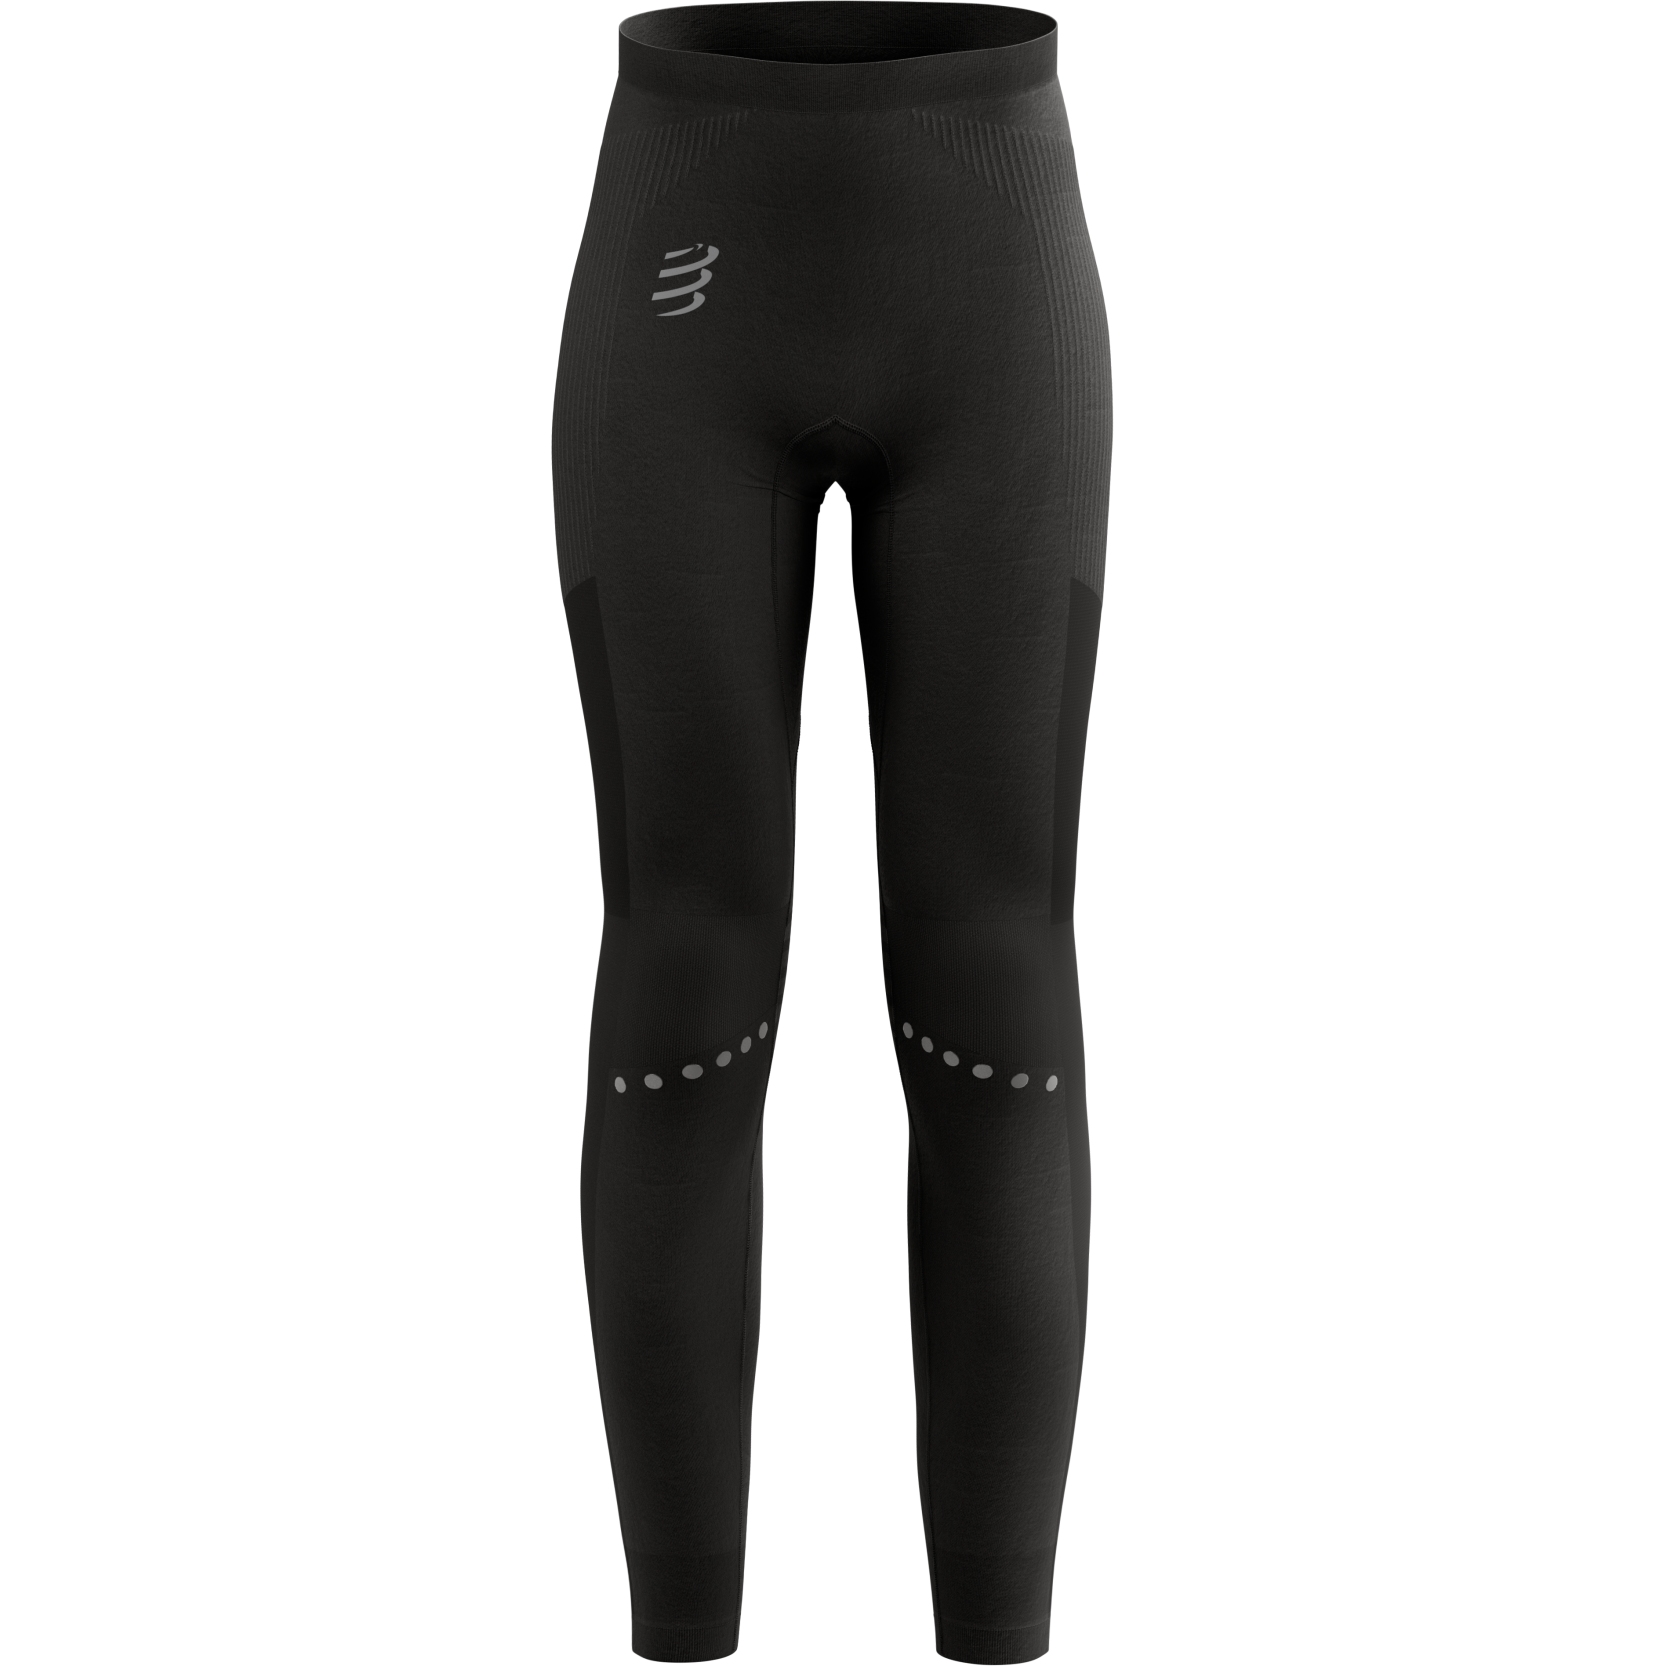 Produktbild von Compressport Winter Running Leggings Damen - schwarz